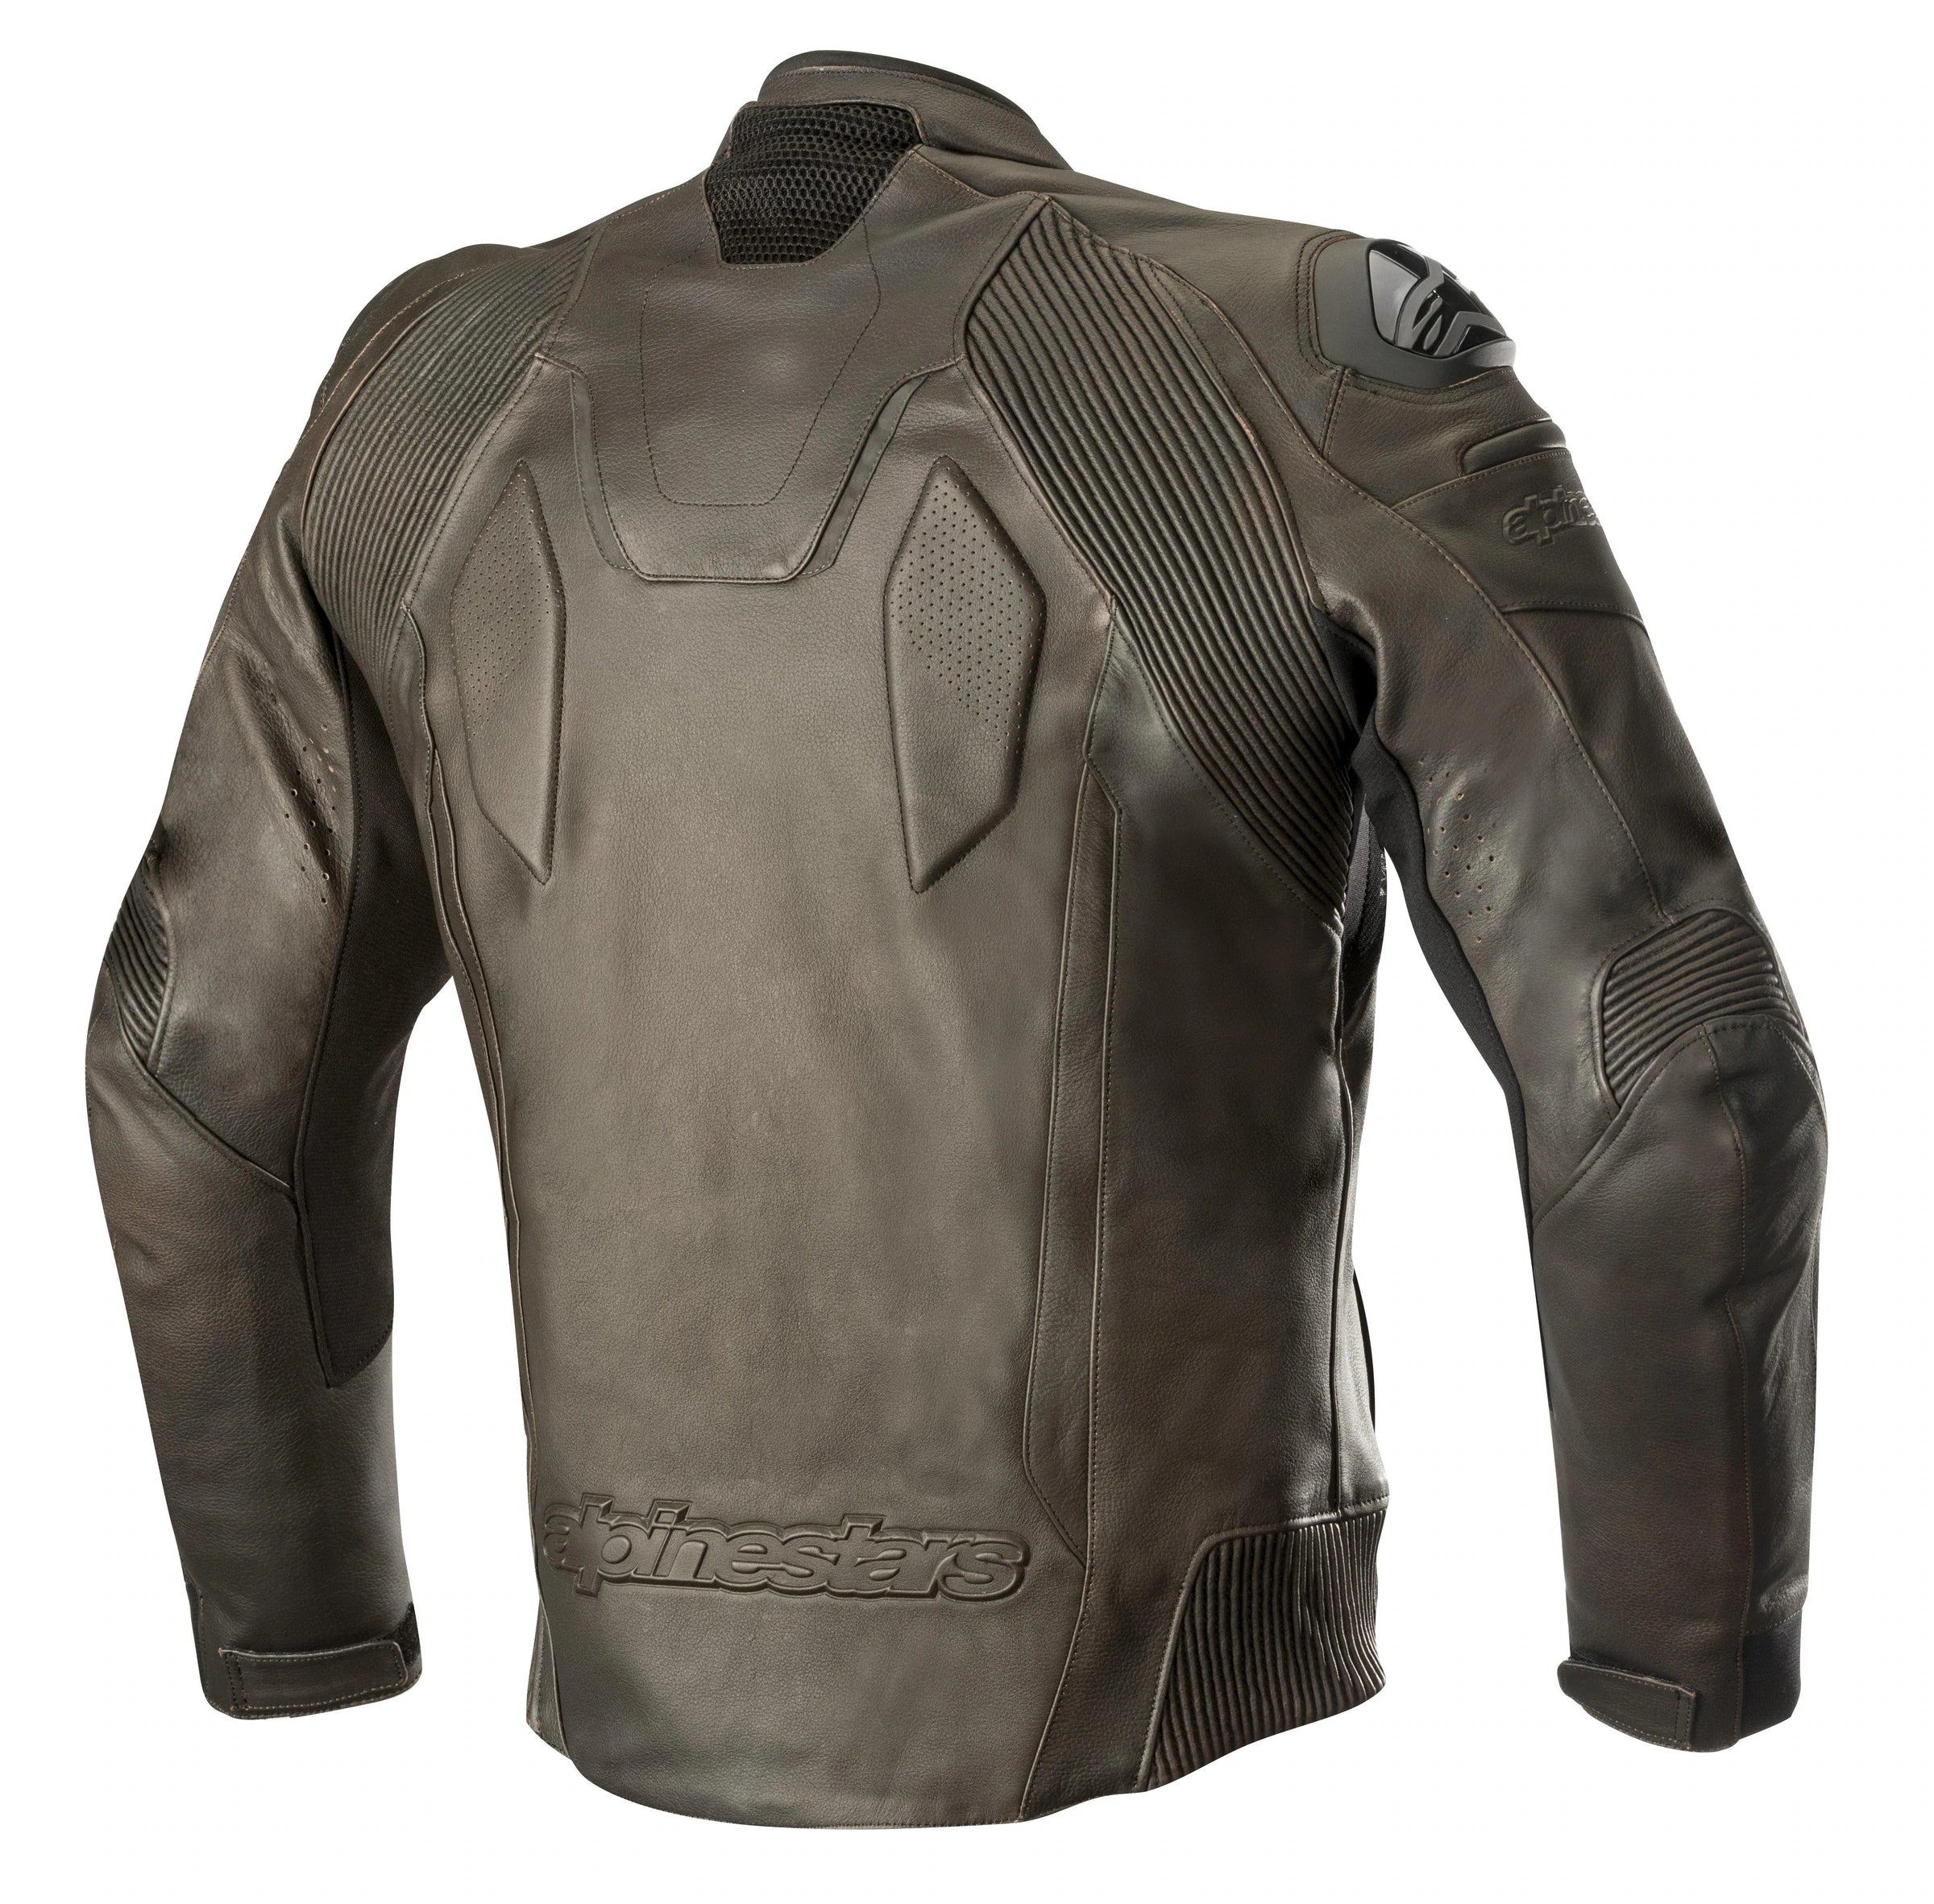 Alpinestars Caliber Leather Motorcycle Jacket